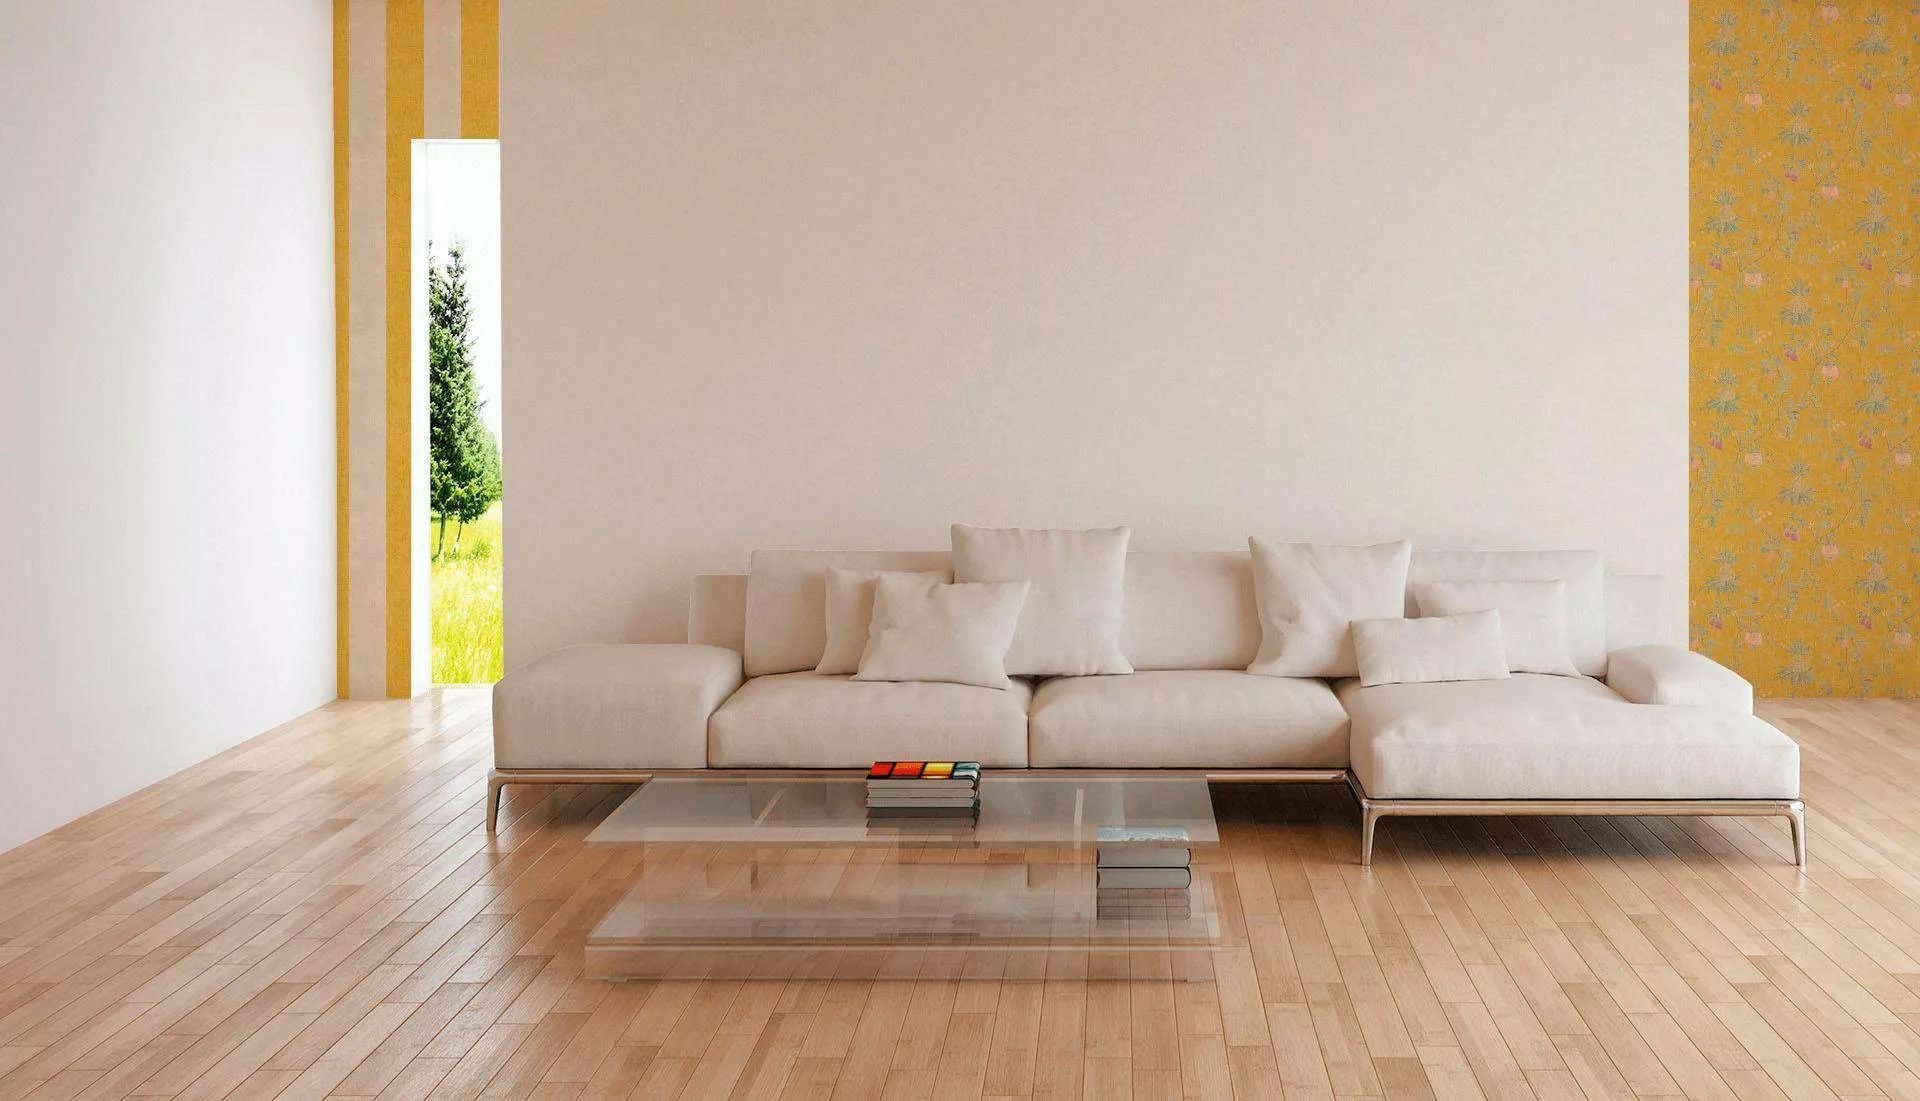 Bricoflor Creme Weiße Tapete Einfarbig Vlies Unitapete Ideal für Schlafzimm günstig online kaufen